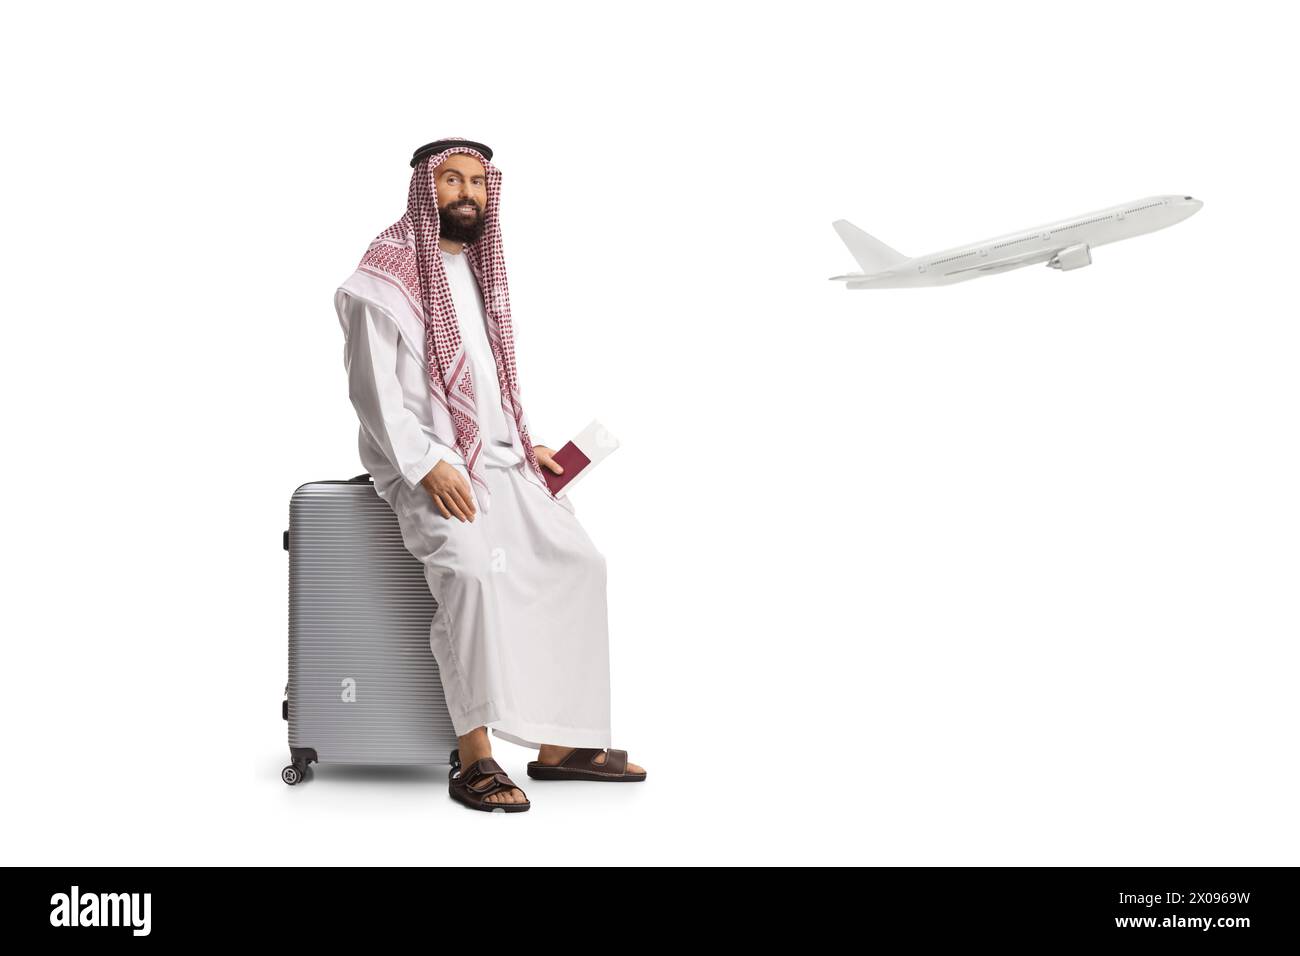 Homme arabe saoudien assis sur une valise avec passeport à la main et un avion décollant isolé sur fond blanc Banque D'Images